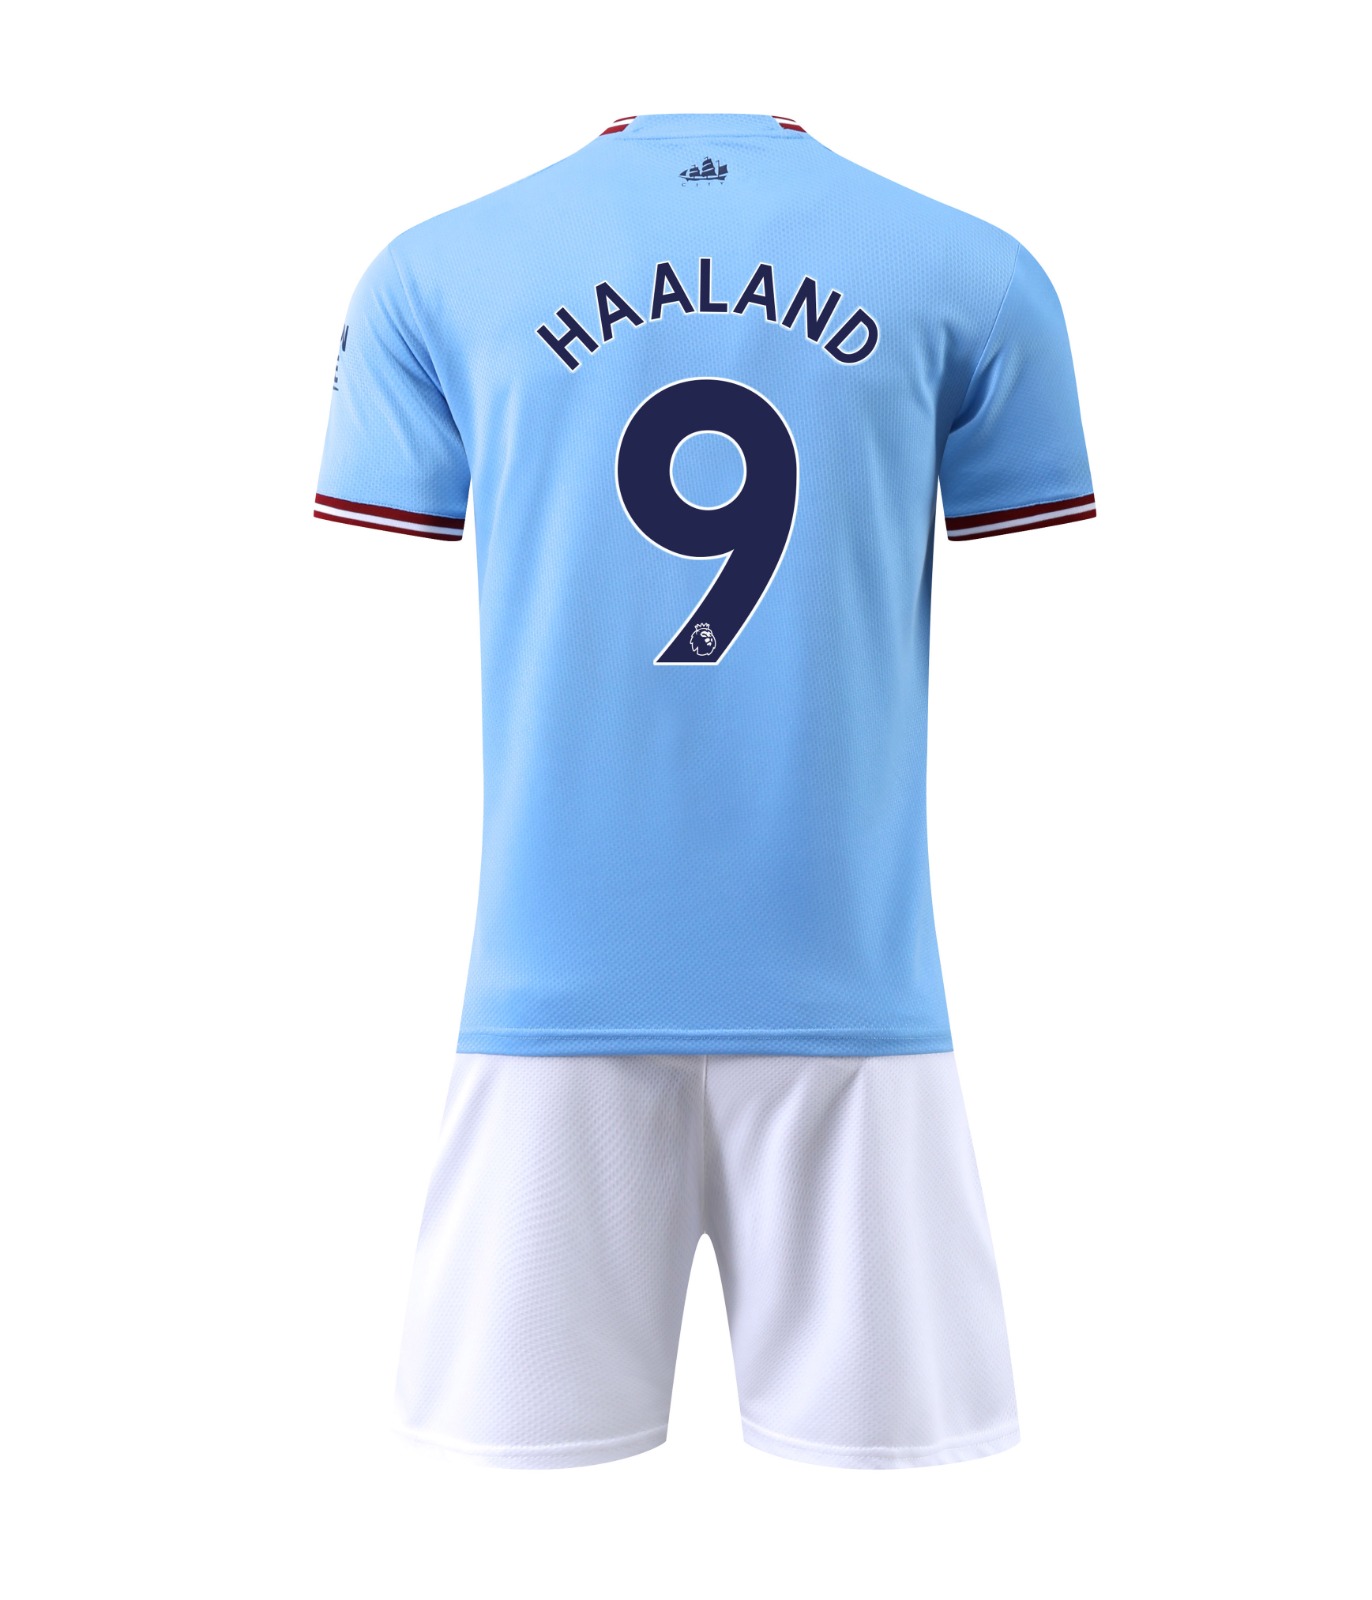 Erling Haaland - Camiseta prémium del Manchester City, Azul